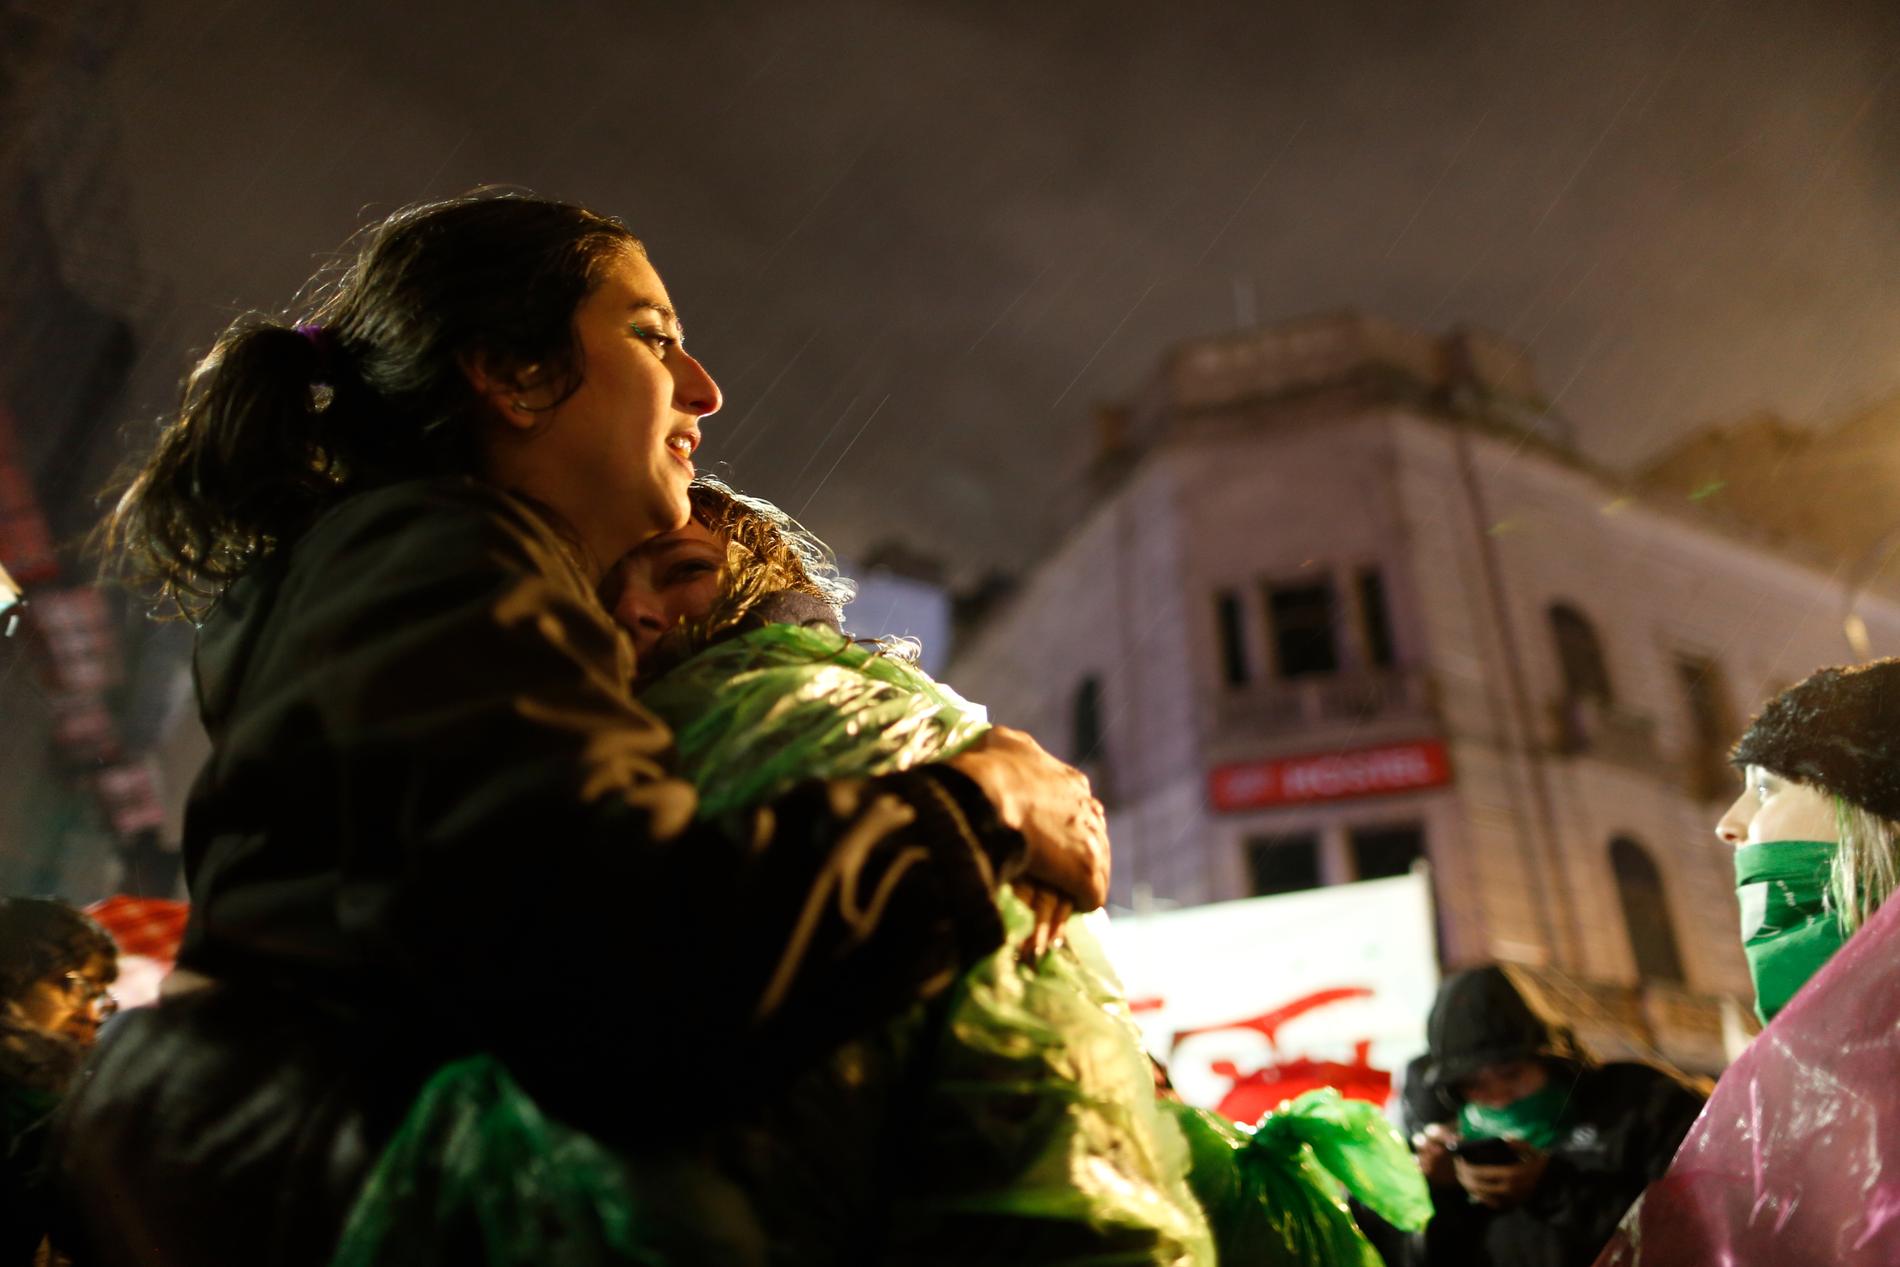 Tamara Deisel kramas om av vännen Florencia Buena, båda aborträttsförespråkare, medan de står i regnet utanför kongressen i Buenos Aires och väntar på omröstningen.